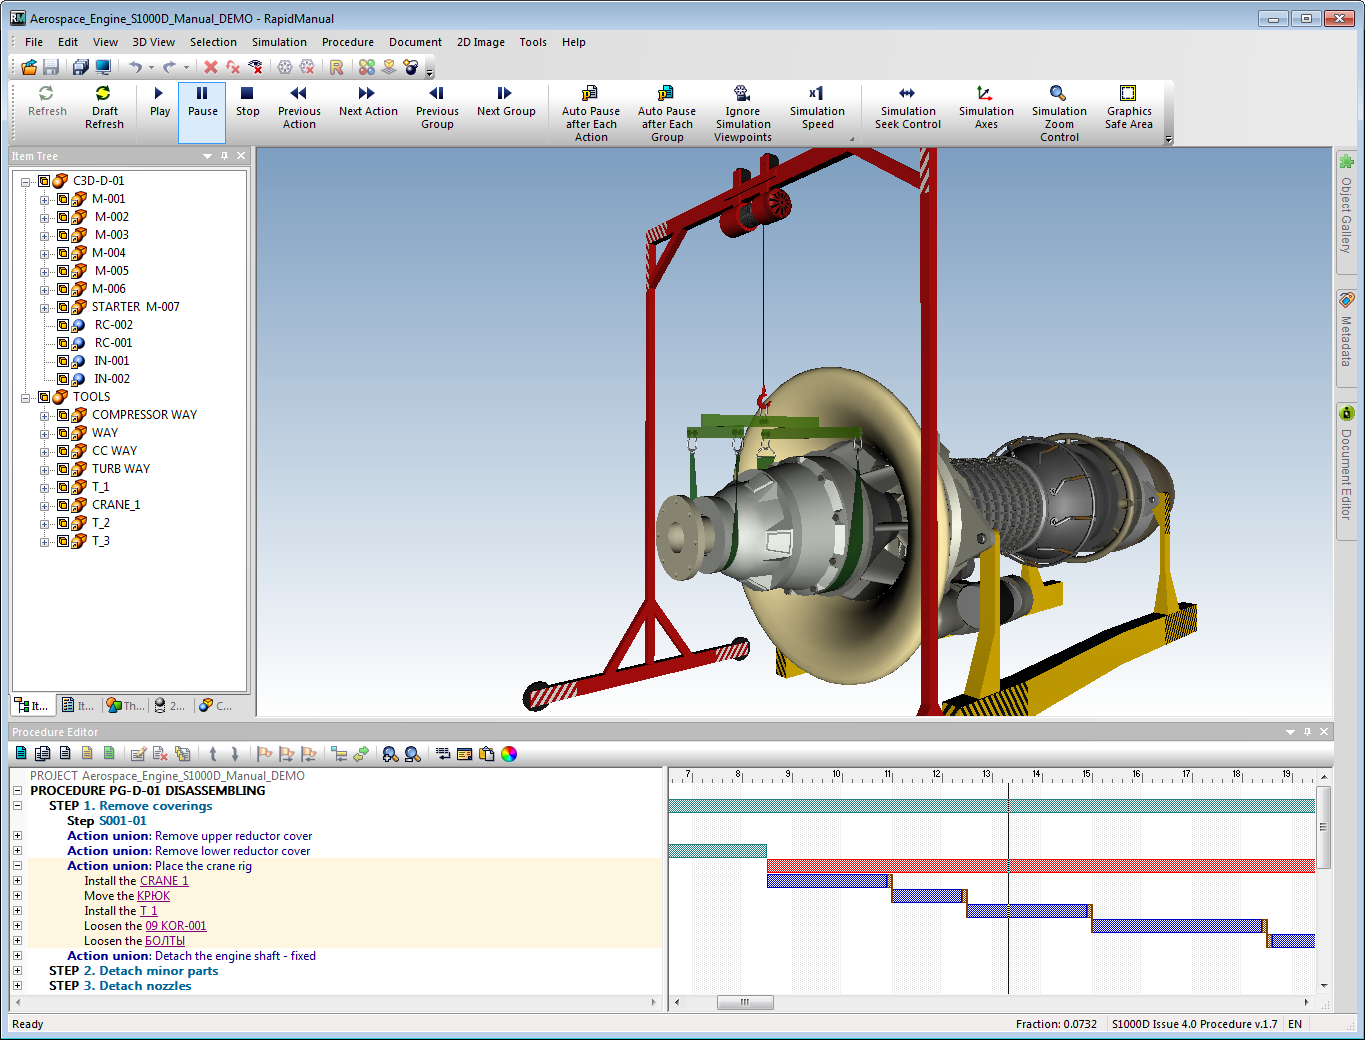 Manuale cortona3d Cortona3D RapidManual è il primo toolkit “pronto all’uso” per la produzione rapida e semplice di manuali tecnici elettronici interattivi 3D (IETM) / Procedure operative / Istruzioni di lavoro di assemblaggio (installazione), sia per operazioni, assistenza, manutenzione o riparazione. RapidManual utilizza simulazioni 3D animate per comunicare in modo chiaro complesse procedure meccaniche. I manuali 3D incoraggiano il “Know-How visivo”, riducendo al minimo i problemi di traduzione e migliorando la conservazione delle informazioni.